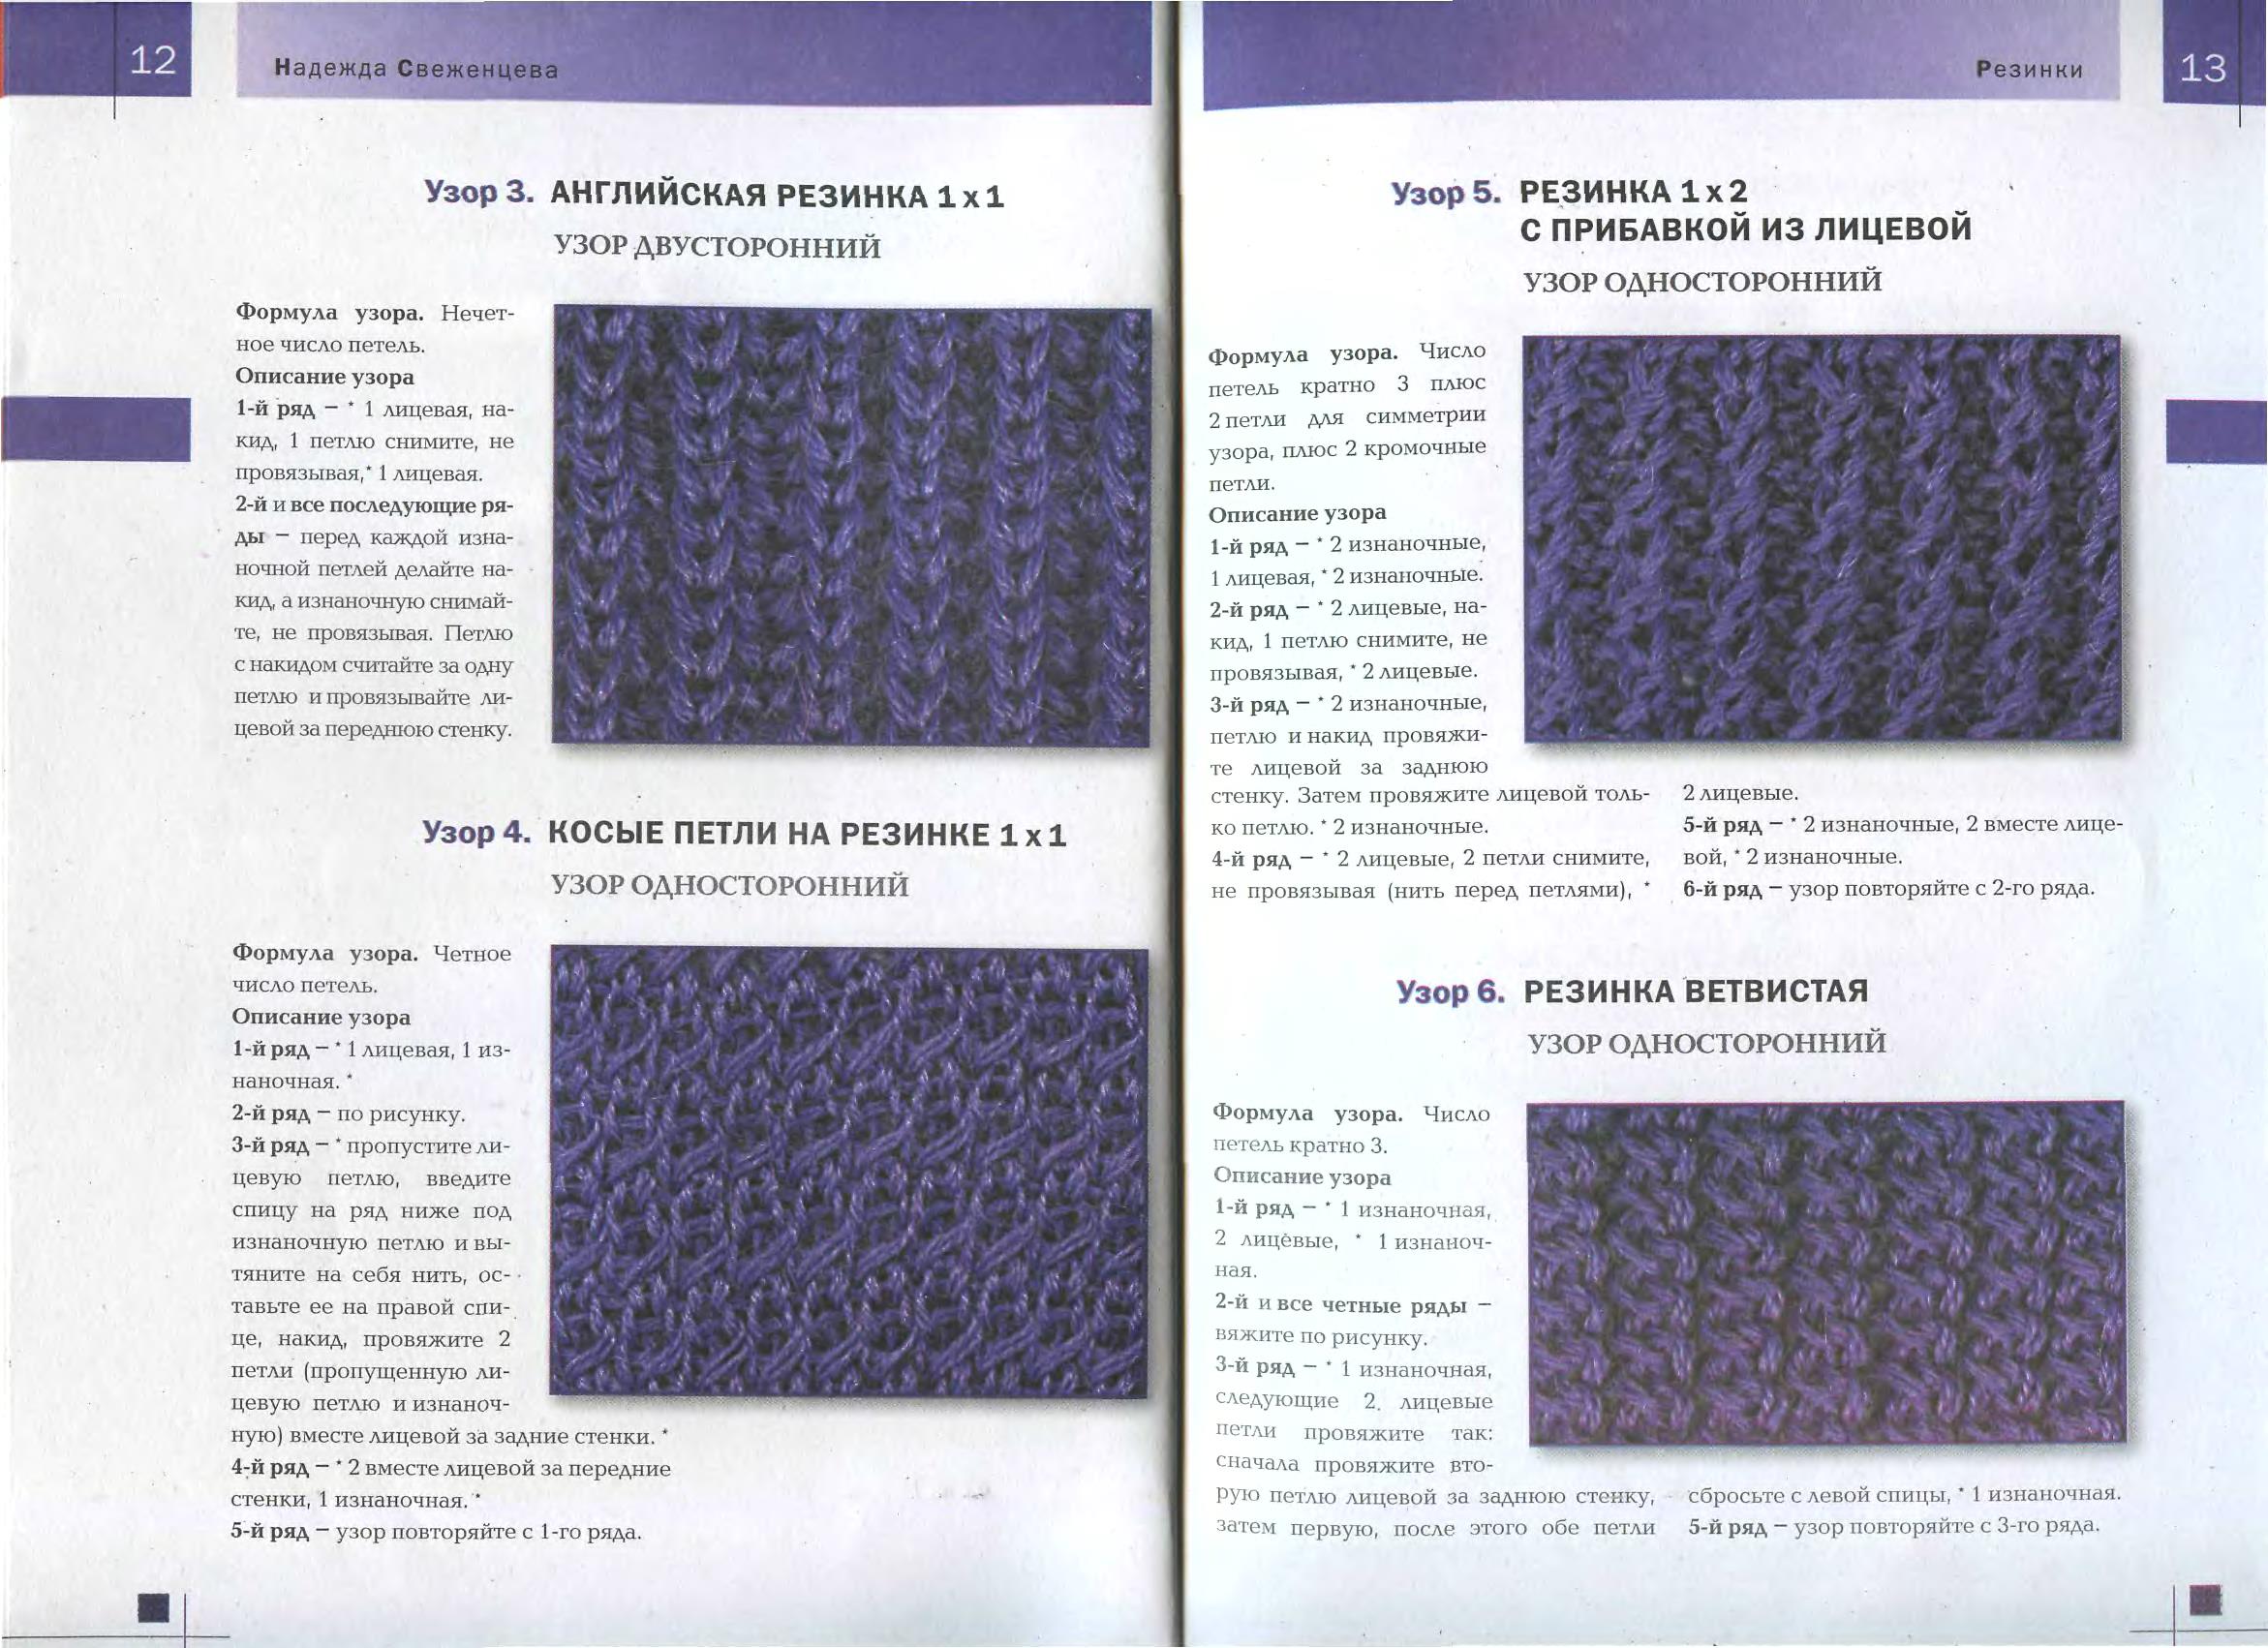 Английское вязание спицами - пошаговые схемы-инструкции для начинающих